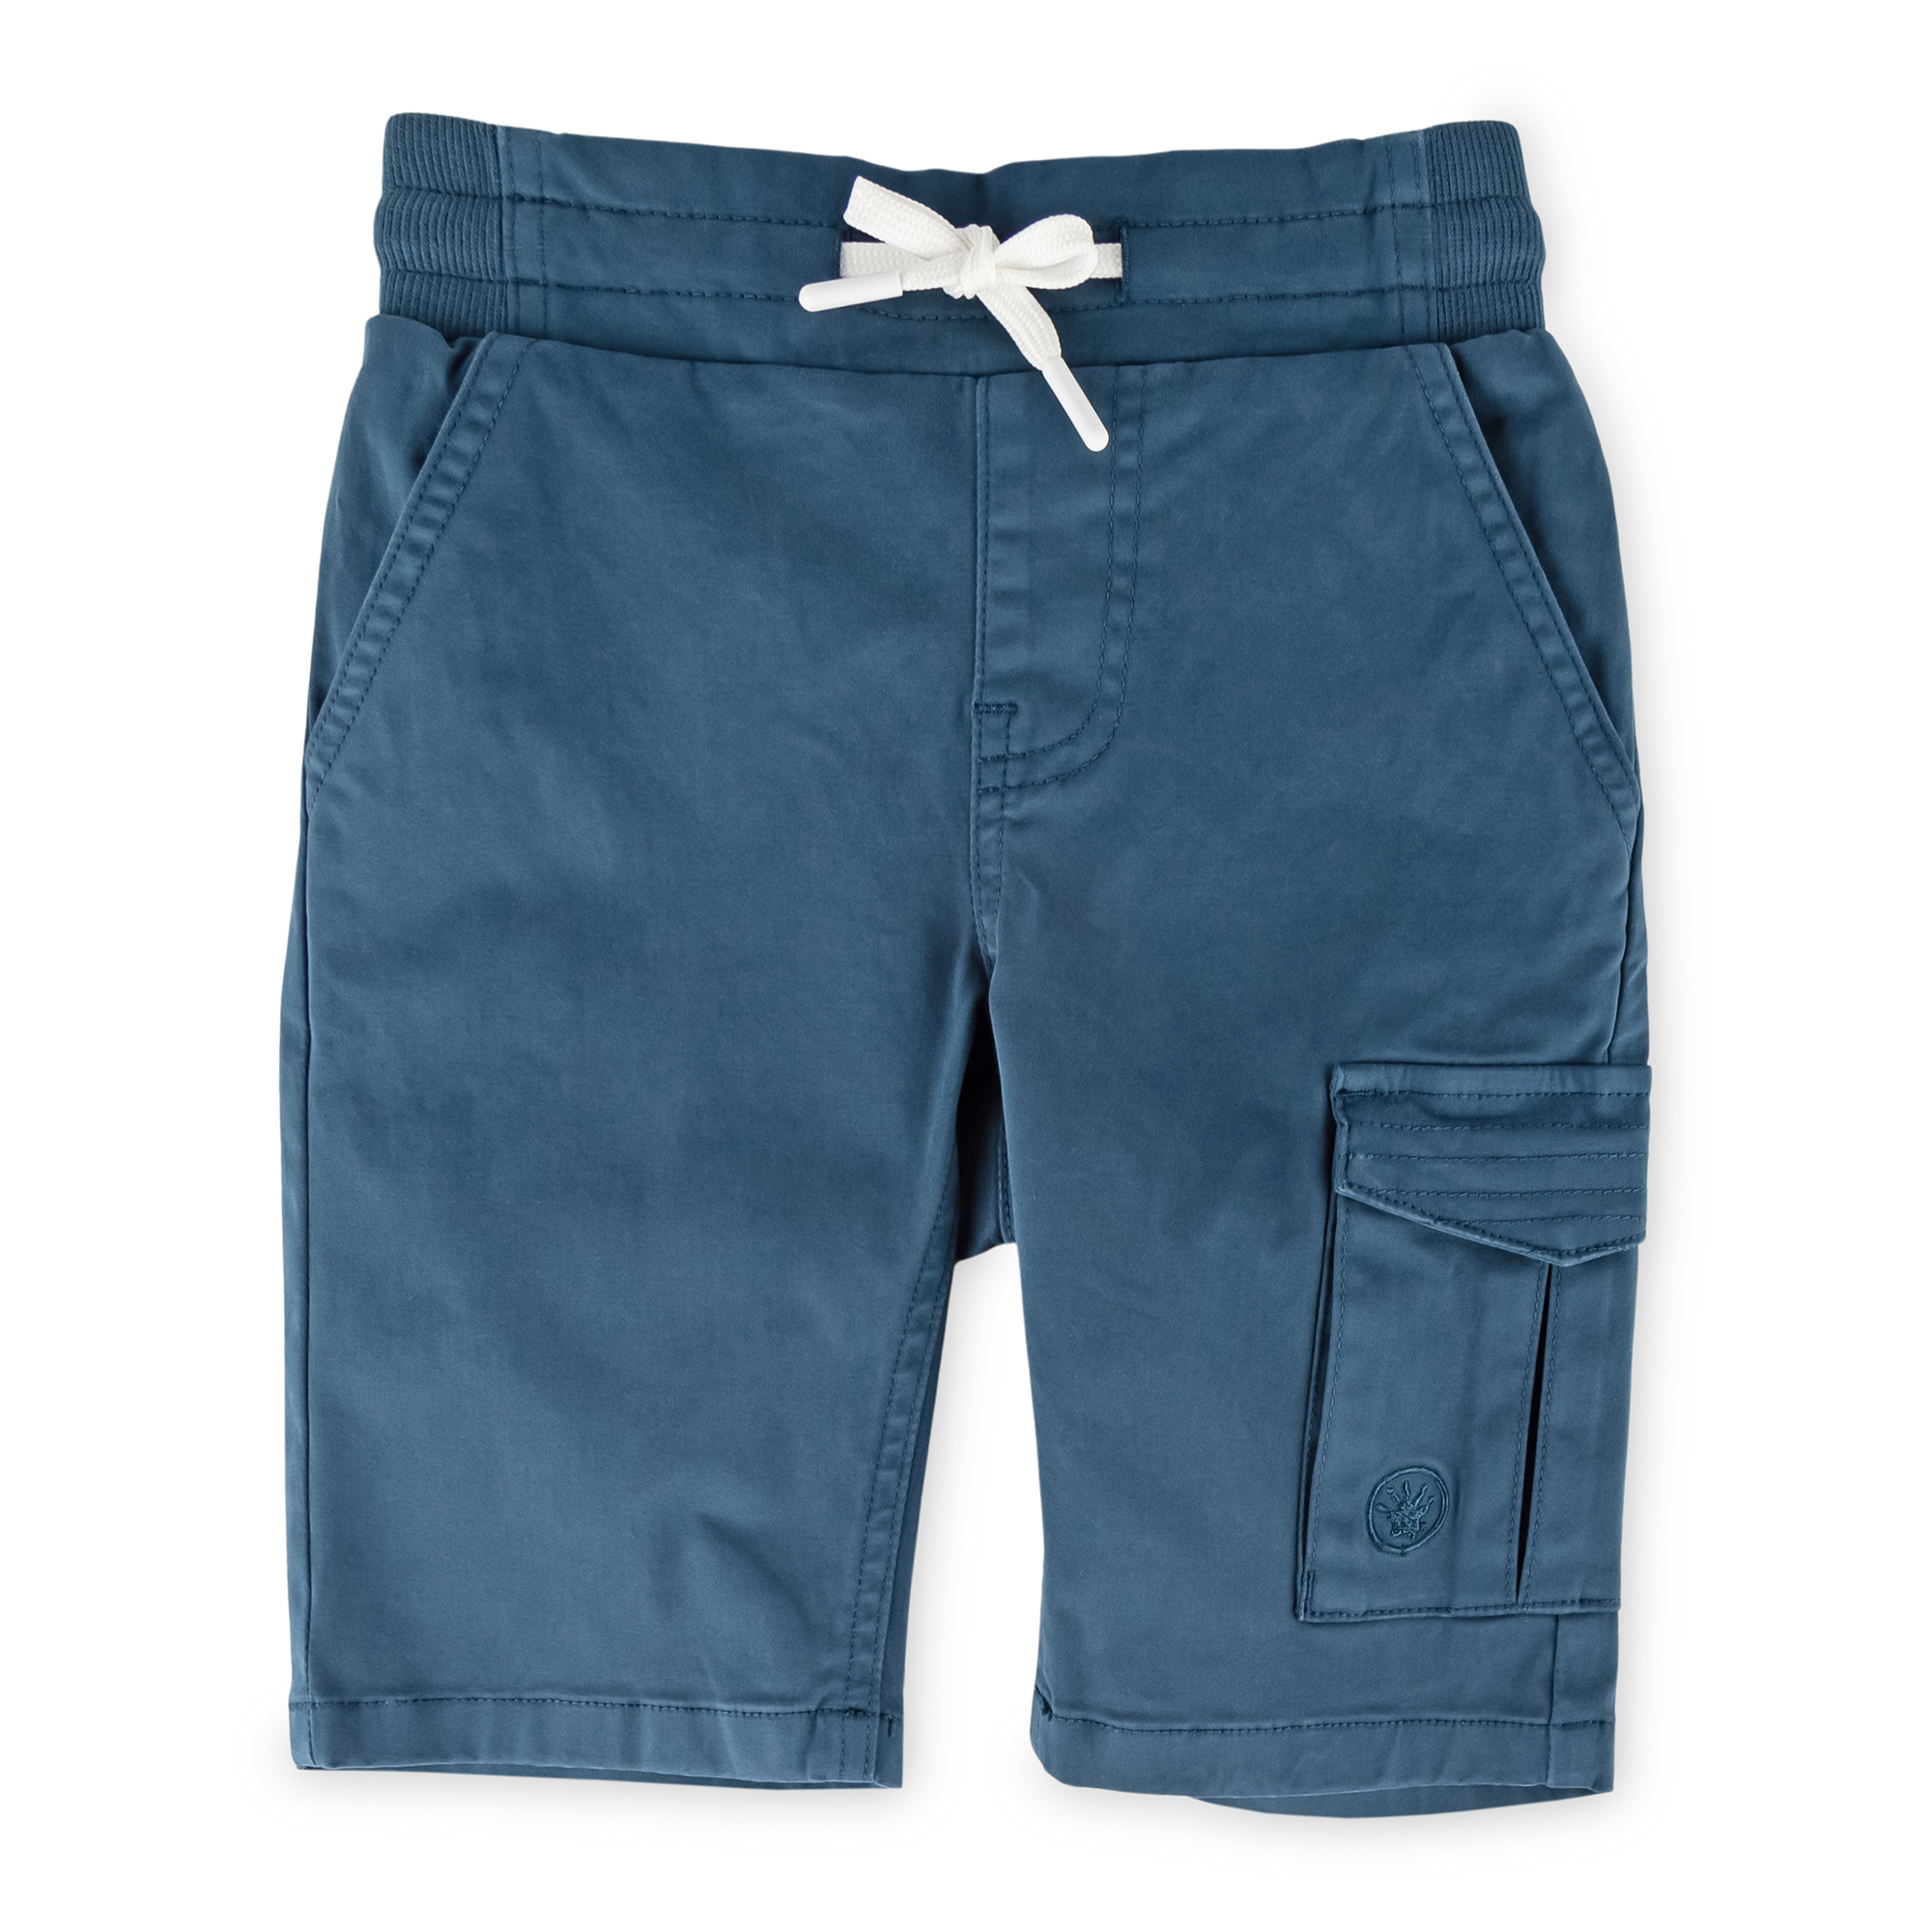 Children's cargo bermuda shorts dark teal blue